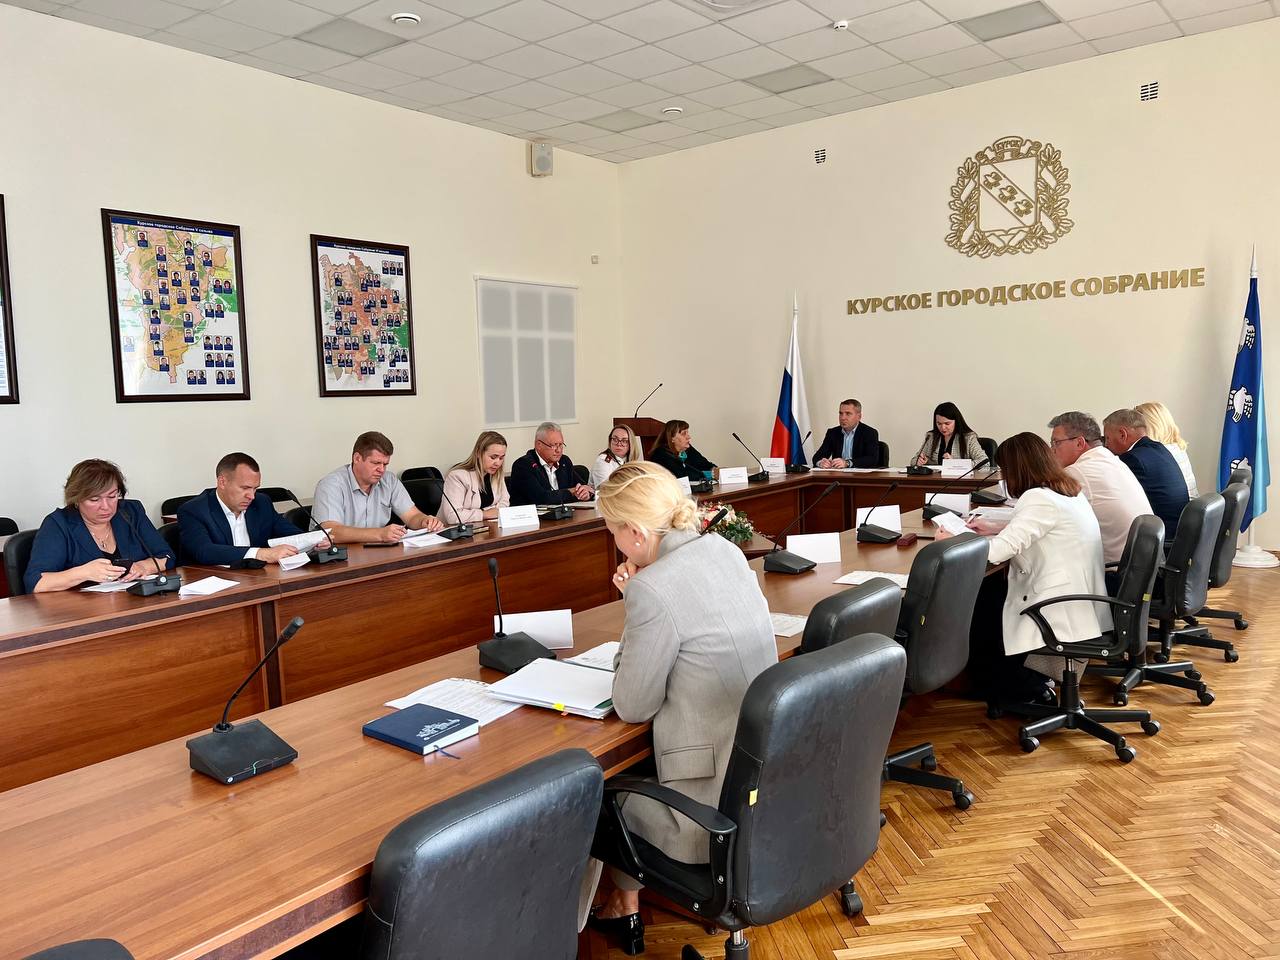 Под руководством заместителя главы администрации города Натальи Пархоменко прошло заседание санитарно-противоэпидемической комиссии.